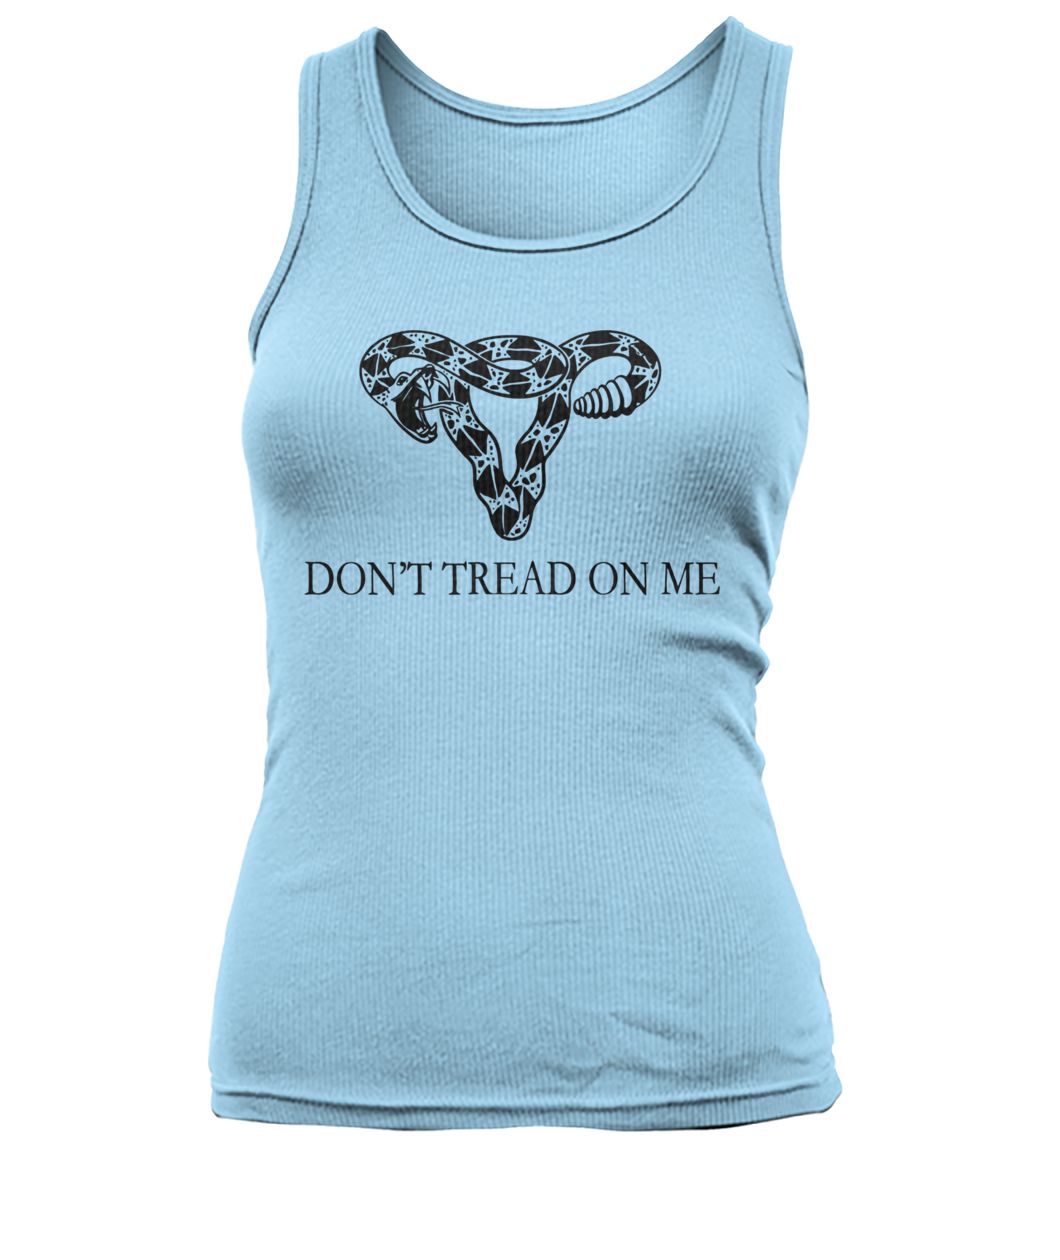 Don't tread on me uterus snake women's tank top